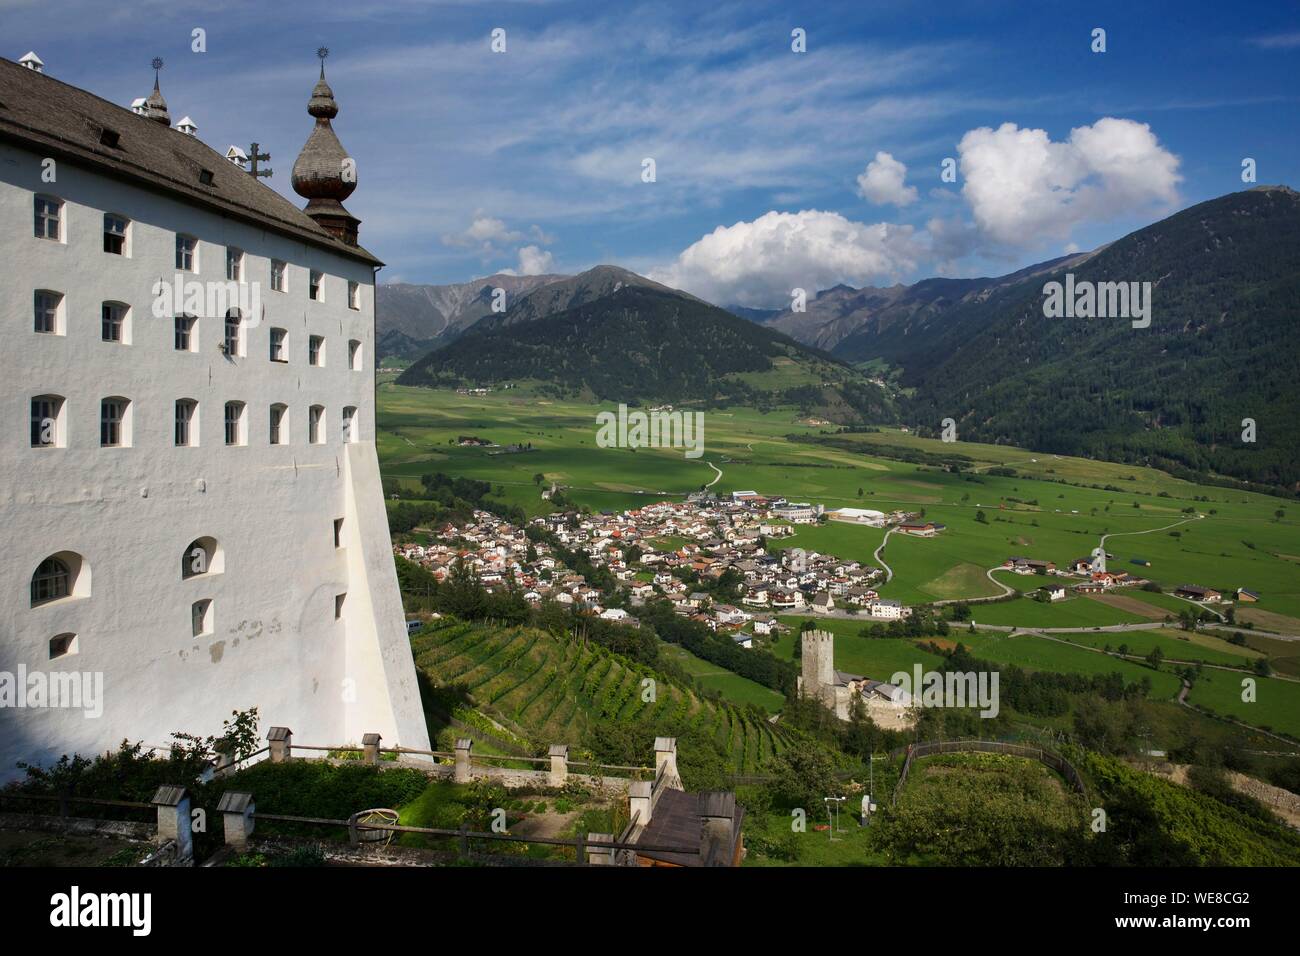 Italie, province autonome de Bolzano, Val Venosta, abbaye de Marienberg perché sur le flanc d'une montagne et surplombant une vallée verte et le village de Burgusio Banque D'Images